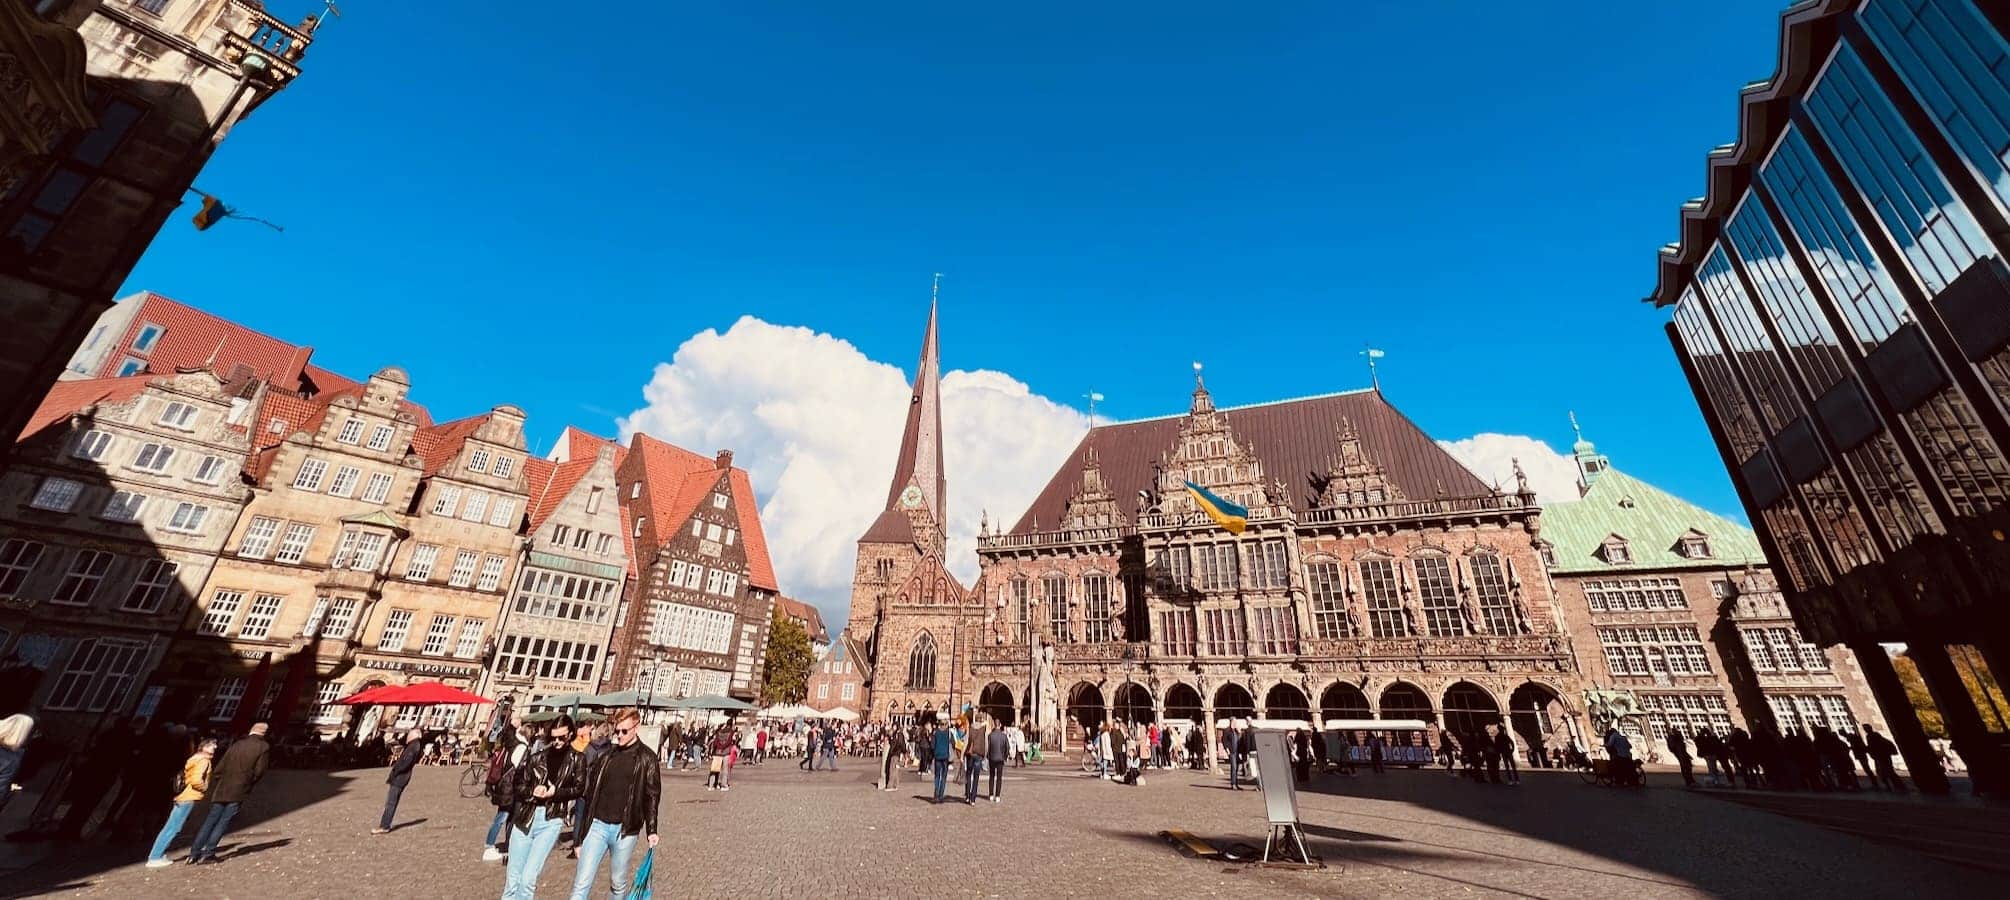 Historischer Marktplatz Bremen mit dem Rathaus